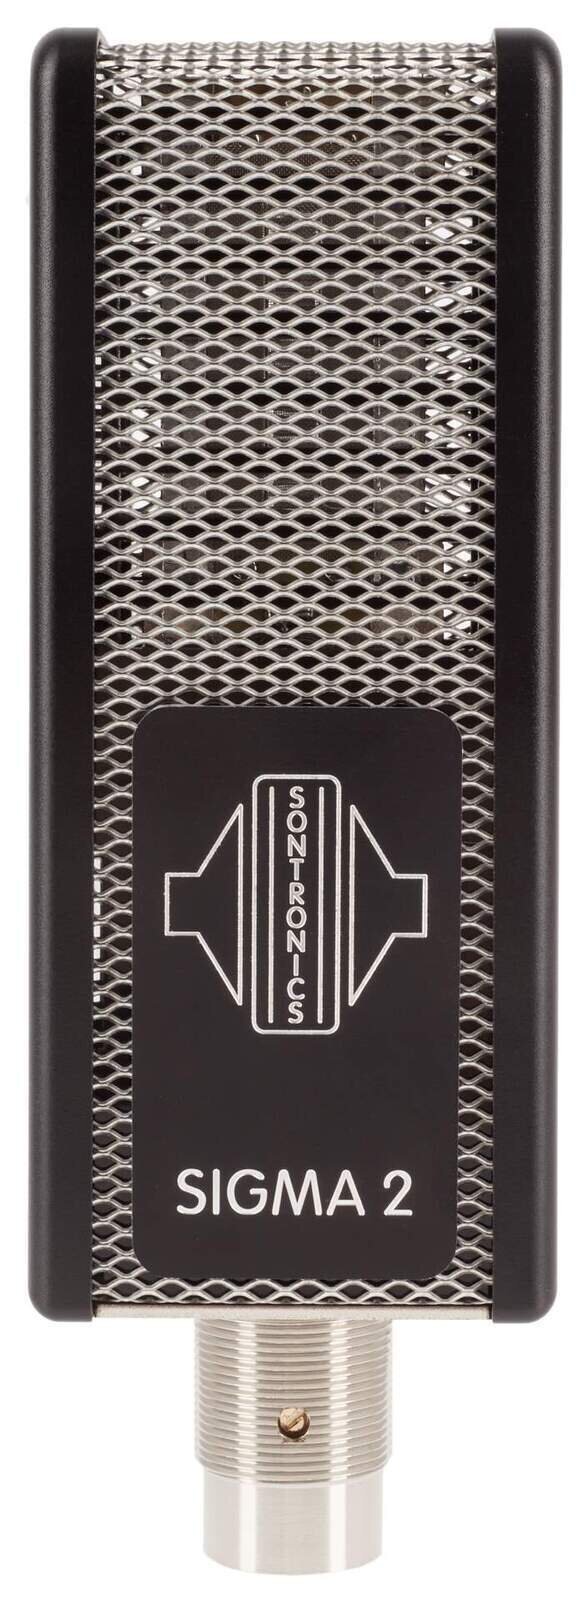 Páskový mikrofon Sontronics Sigma 2 Páskový mikrofon